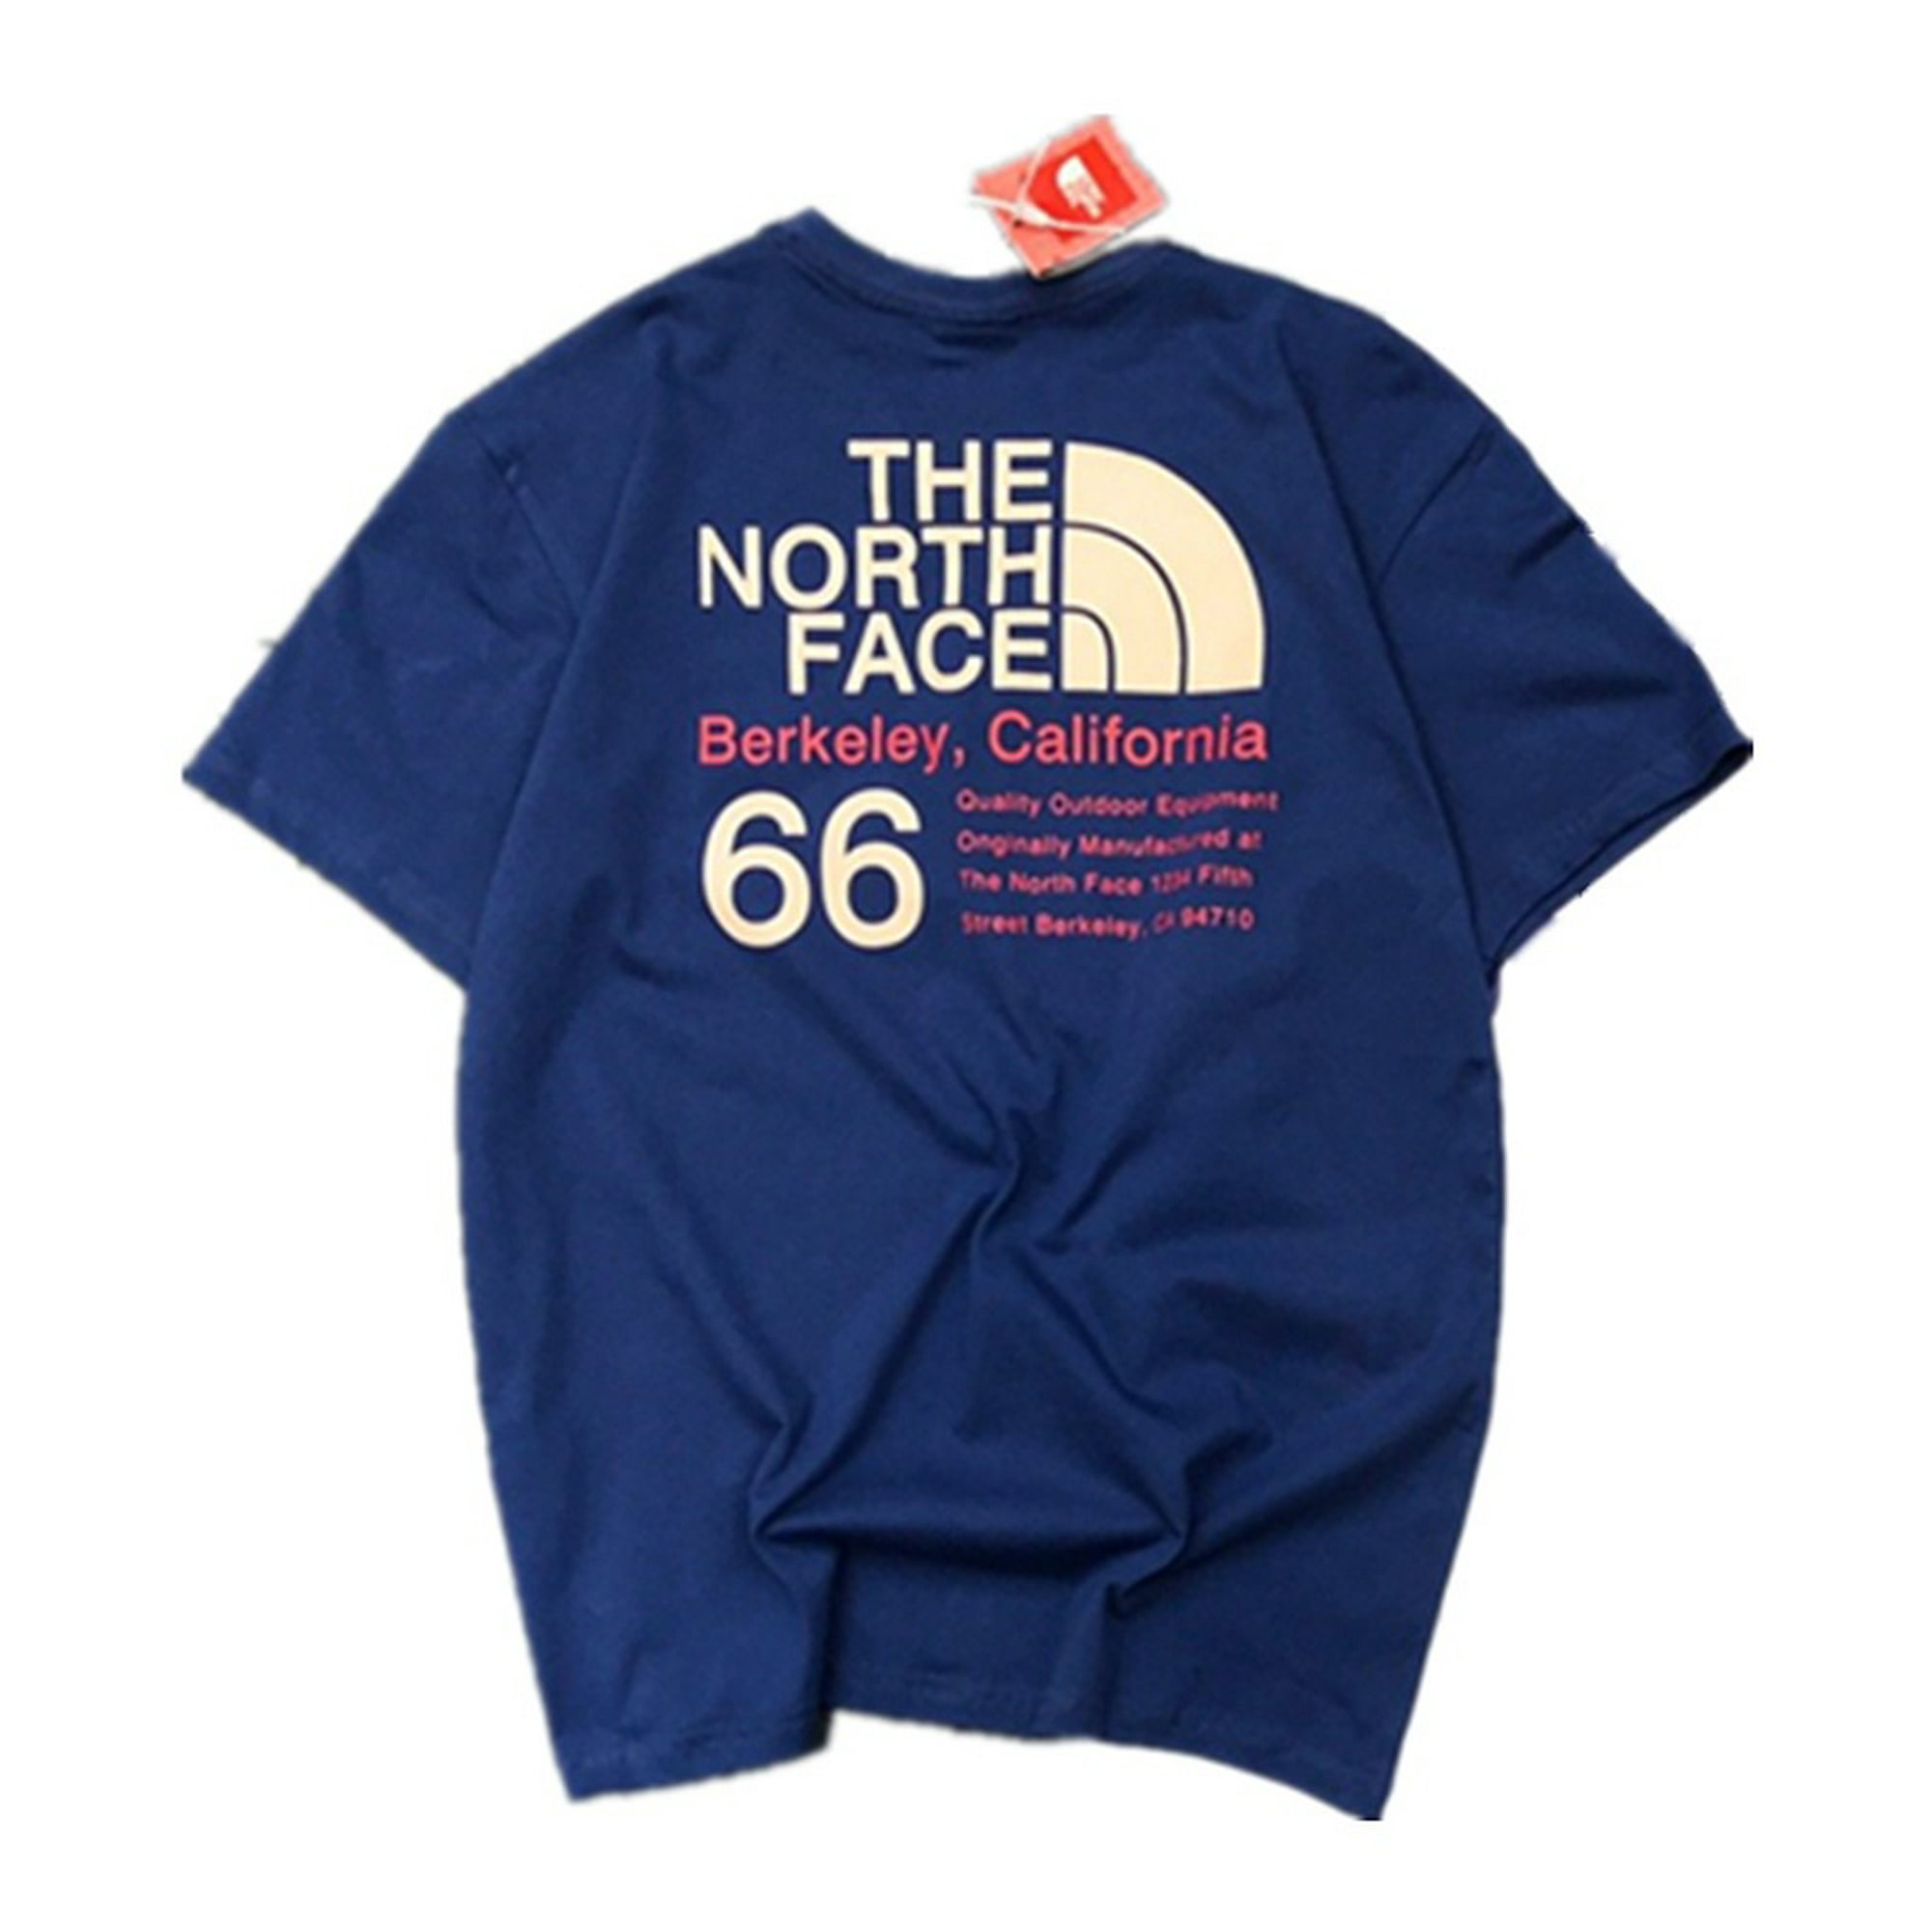 Camiseta de la marca The North Face de color Marino para hombre